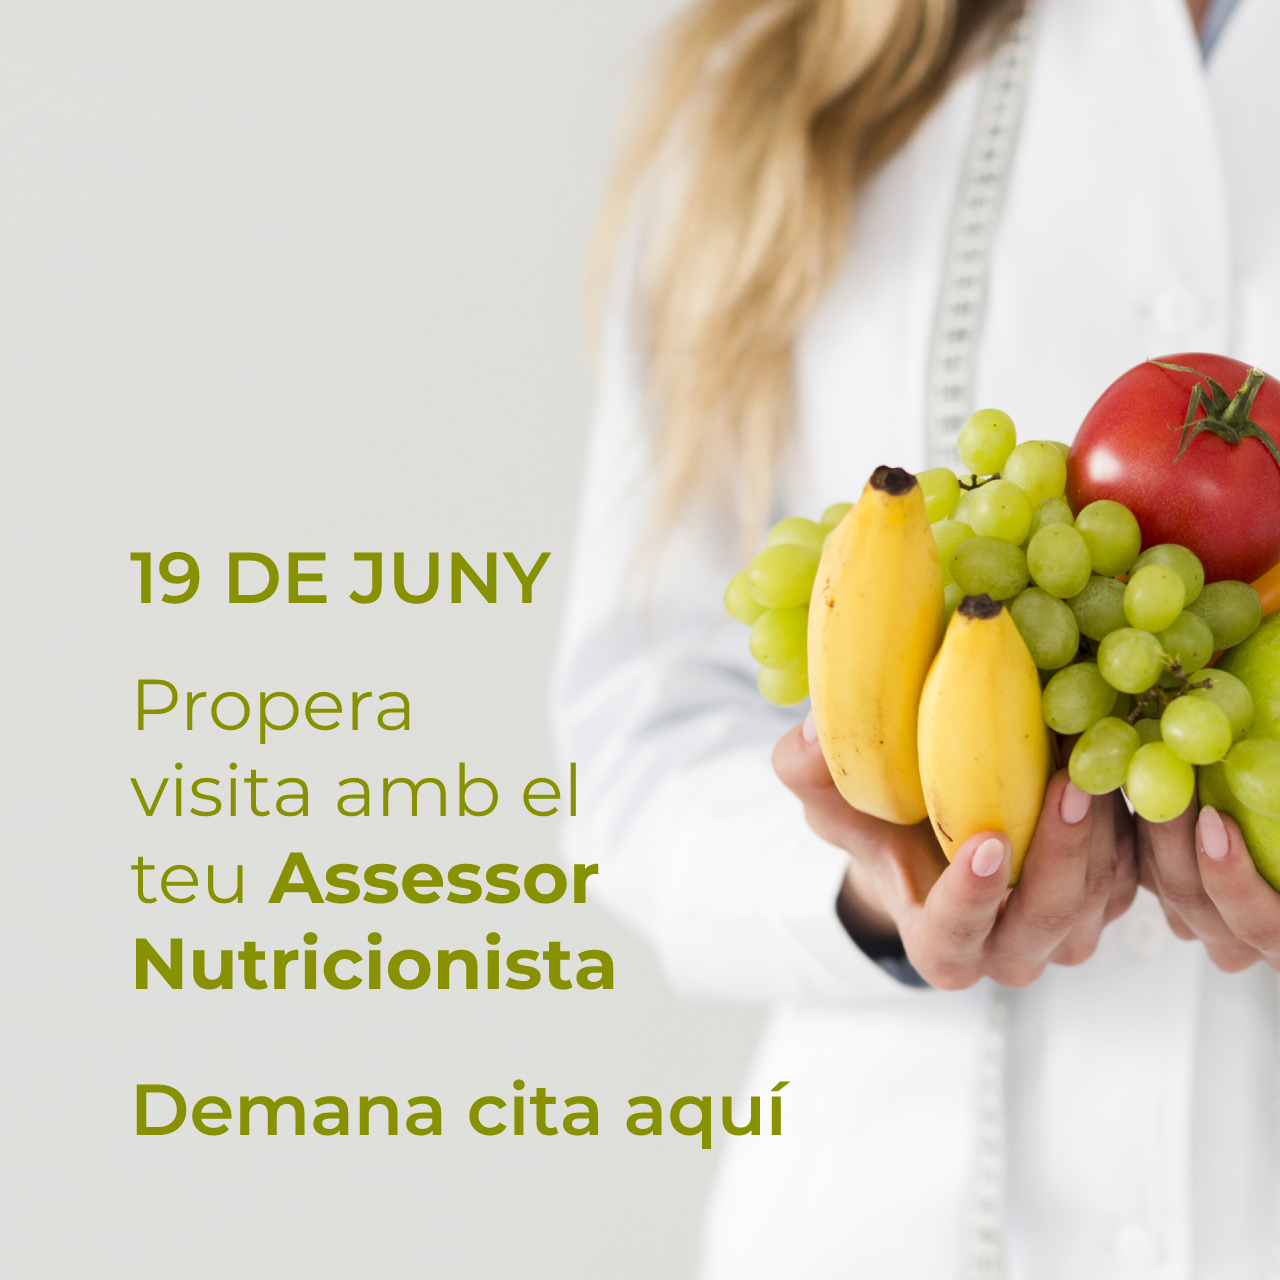 19 de juny: propera visita amb el teu Assessor Nutricionista. Demana cita!